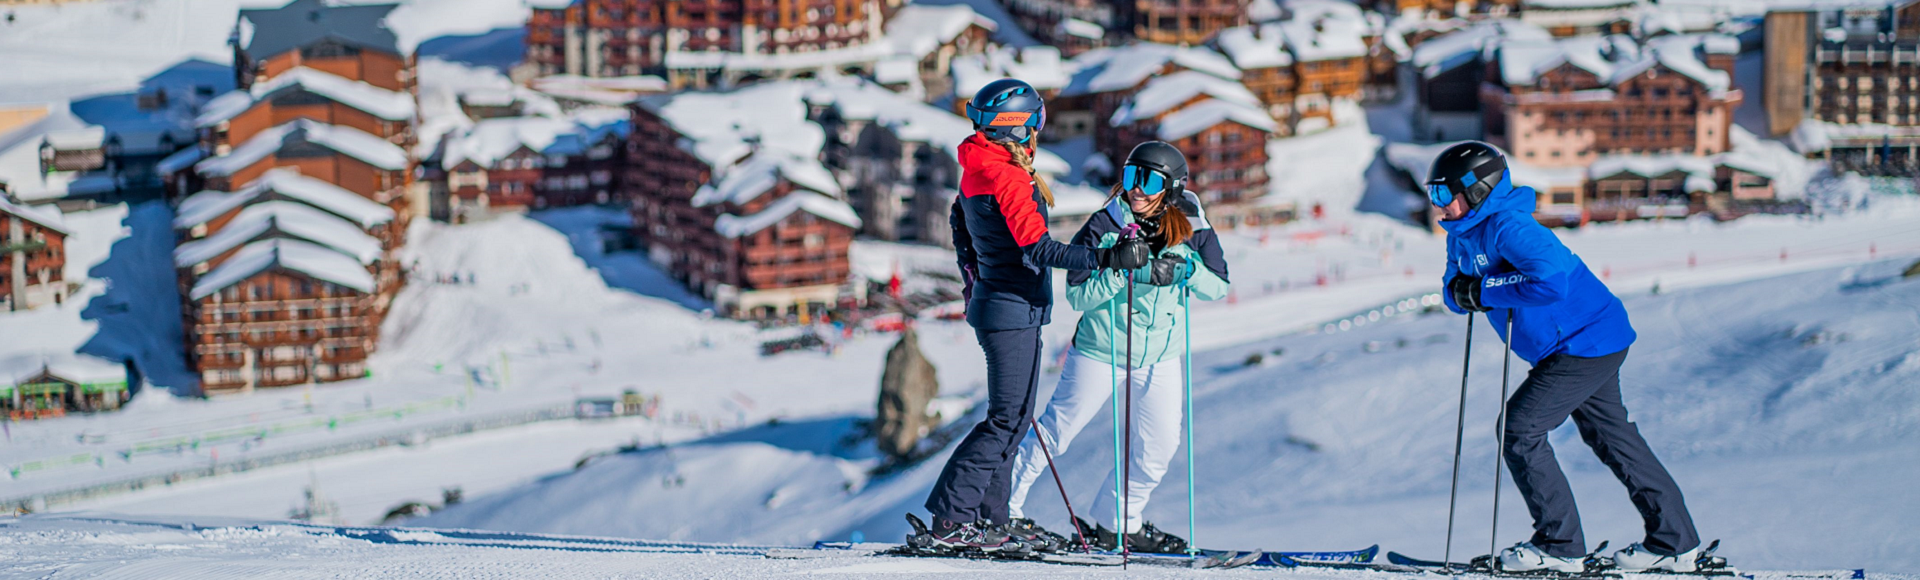 Skiferie Val Thorens - Find din næste skirejse Skisport.dk